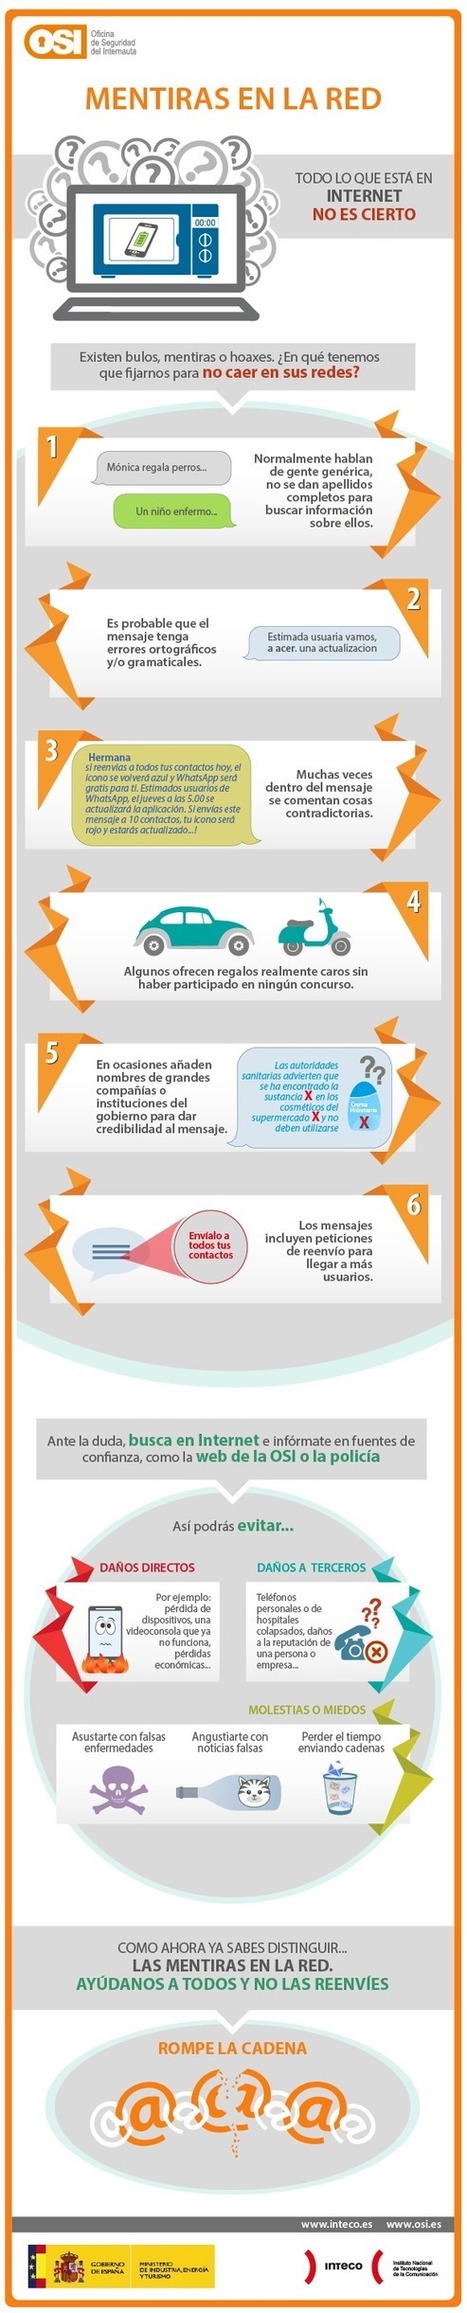 Mentiras y bulos en Internet #infografia #infographic | Seo, Social Media Marketing | Scoop.it